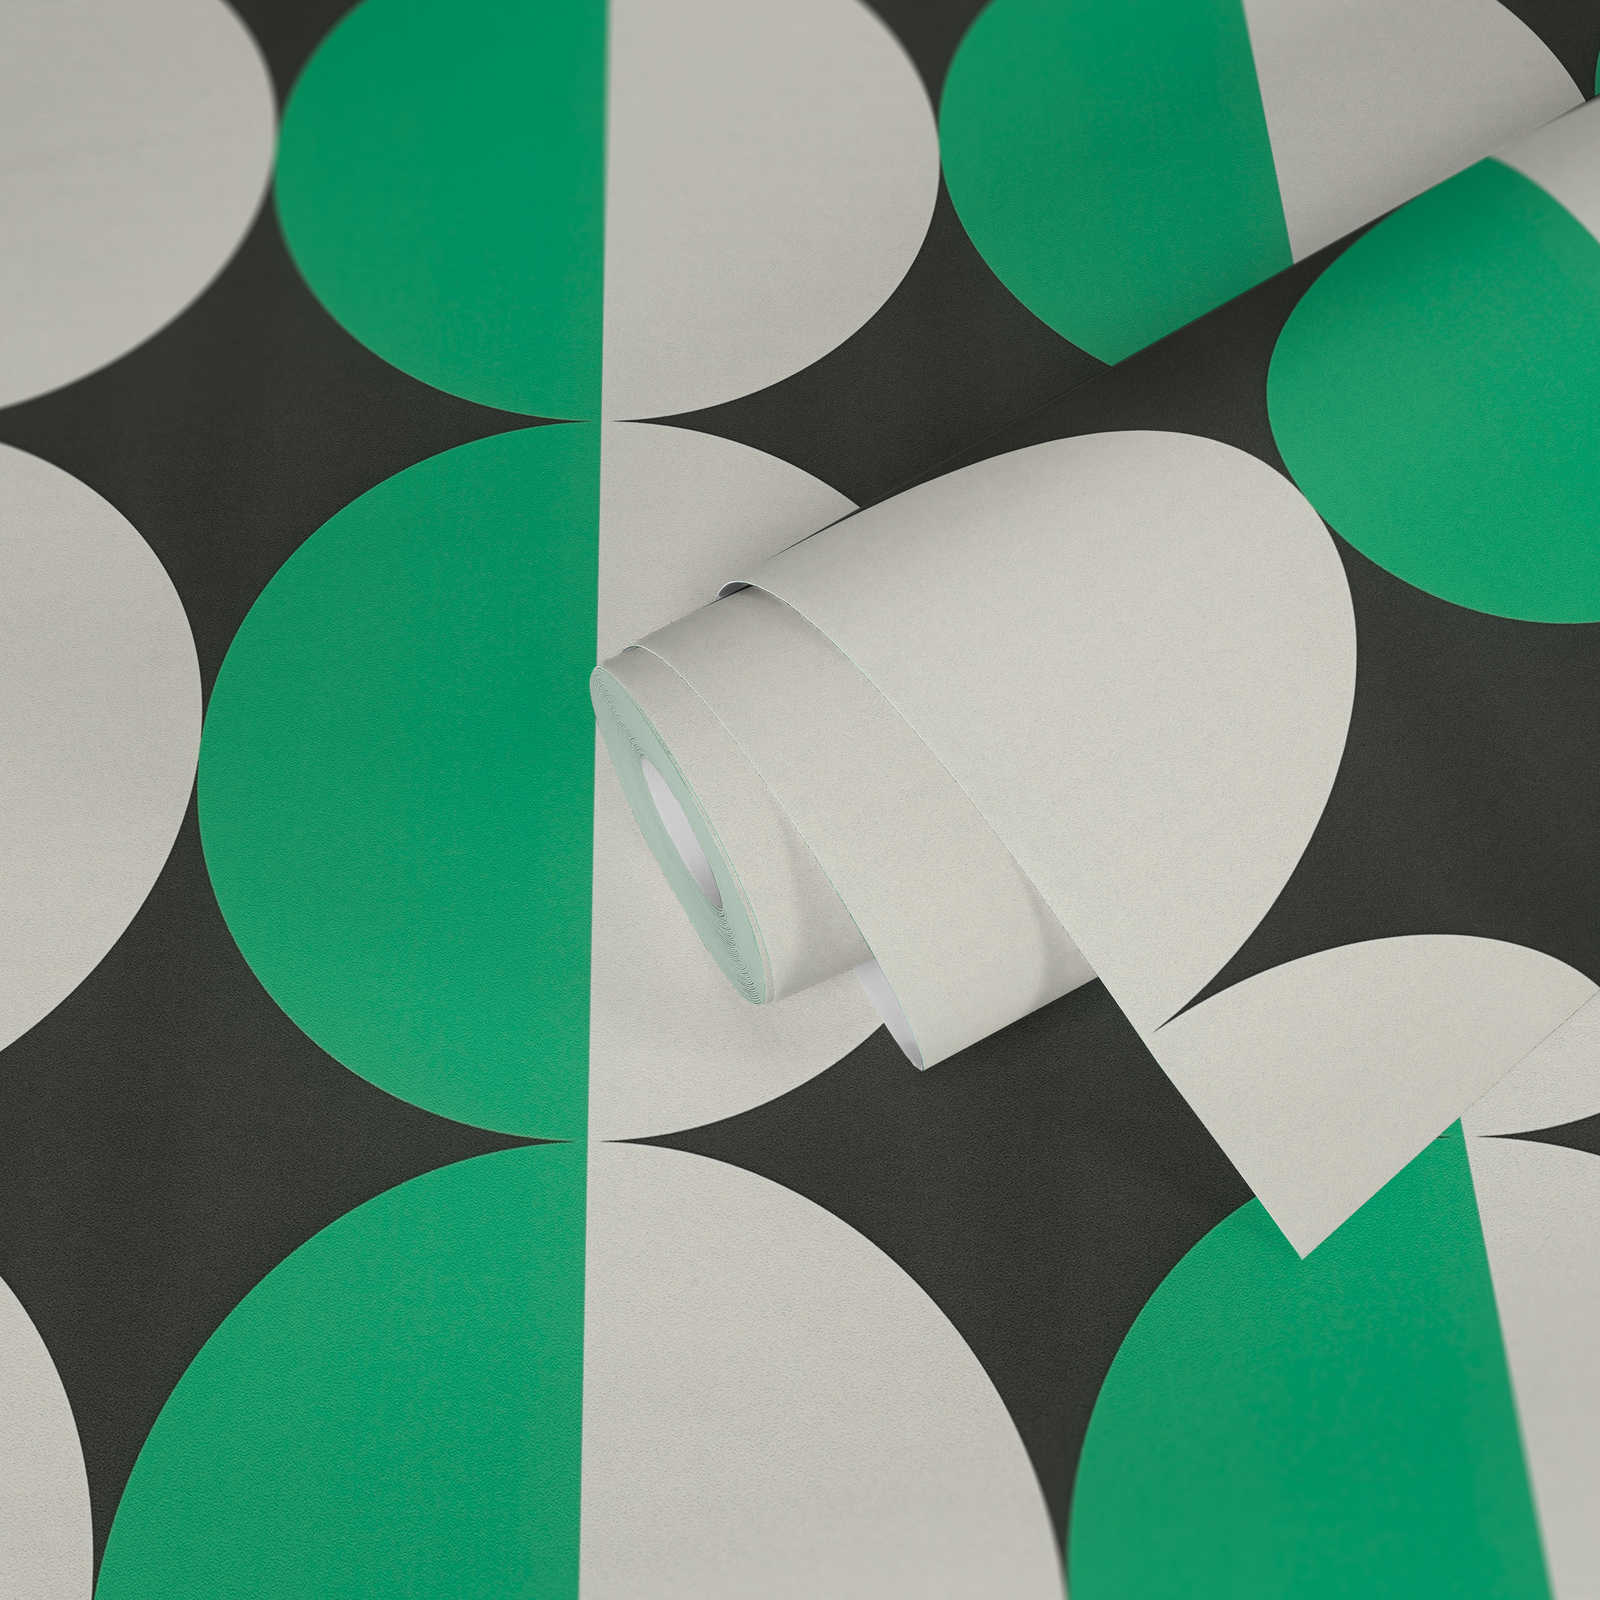             Carta da parati in tessuto non tessuto con motivo a cerchi in stile retrò anni '70 - verde, bianco, nero
        